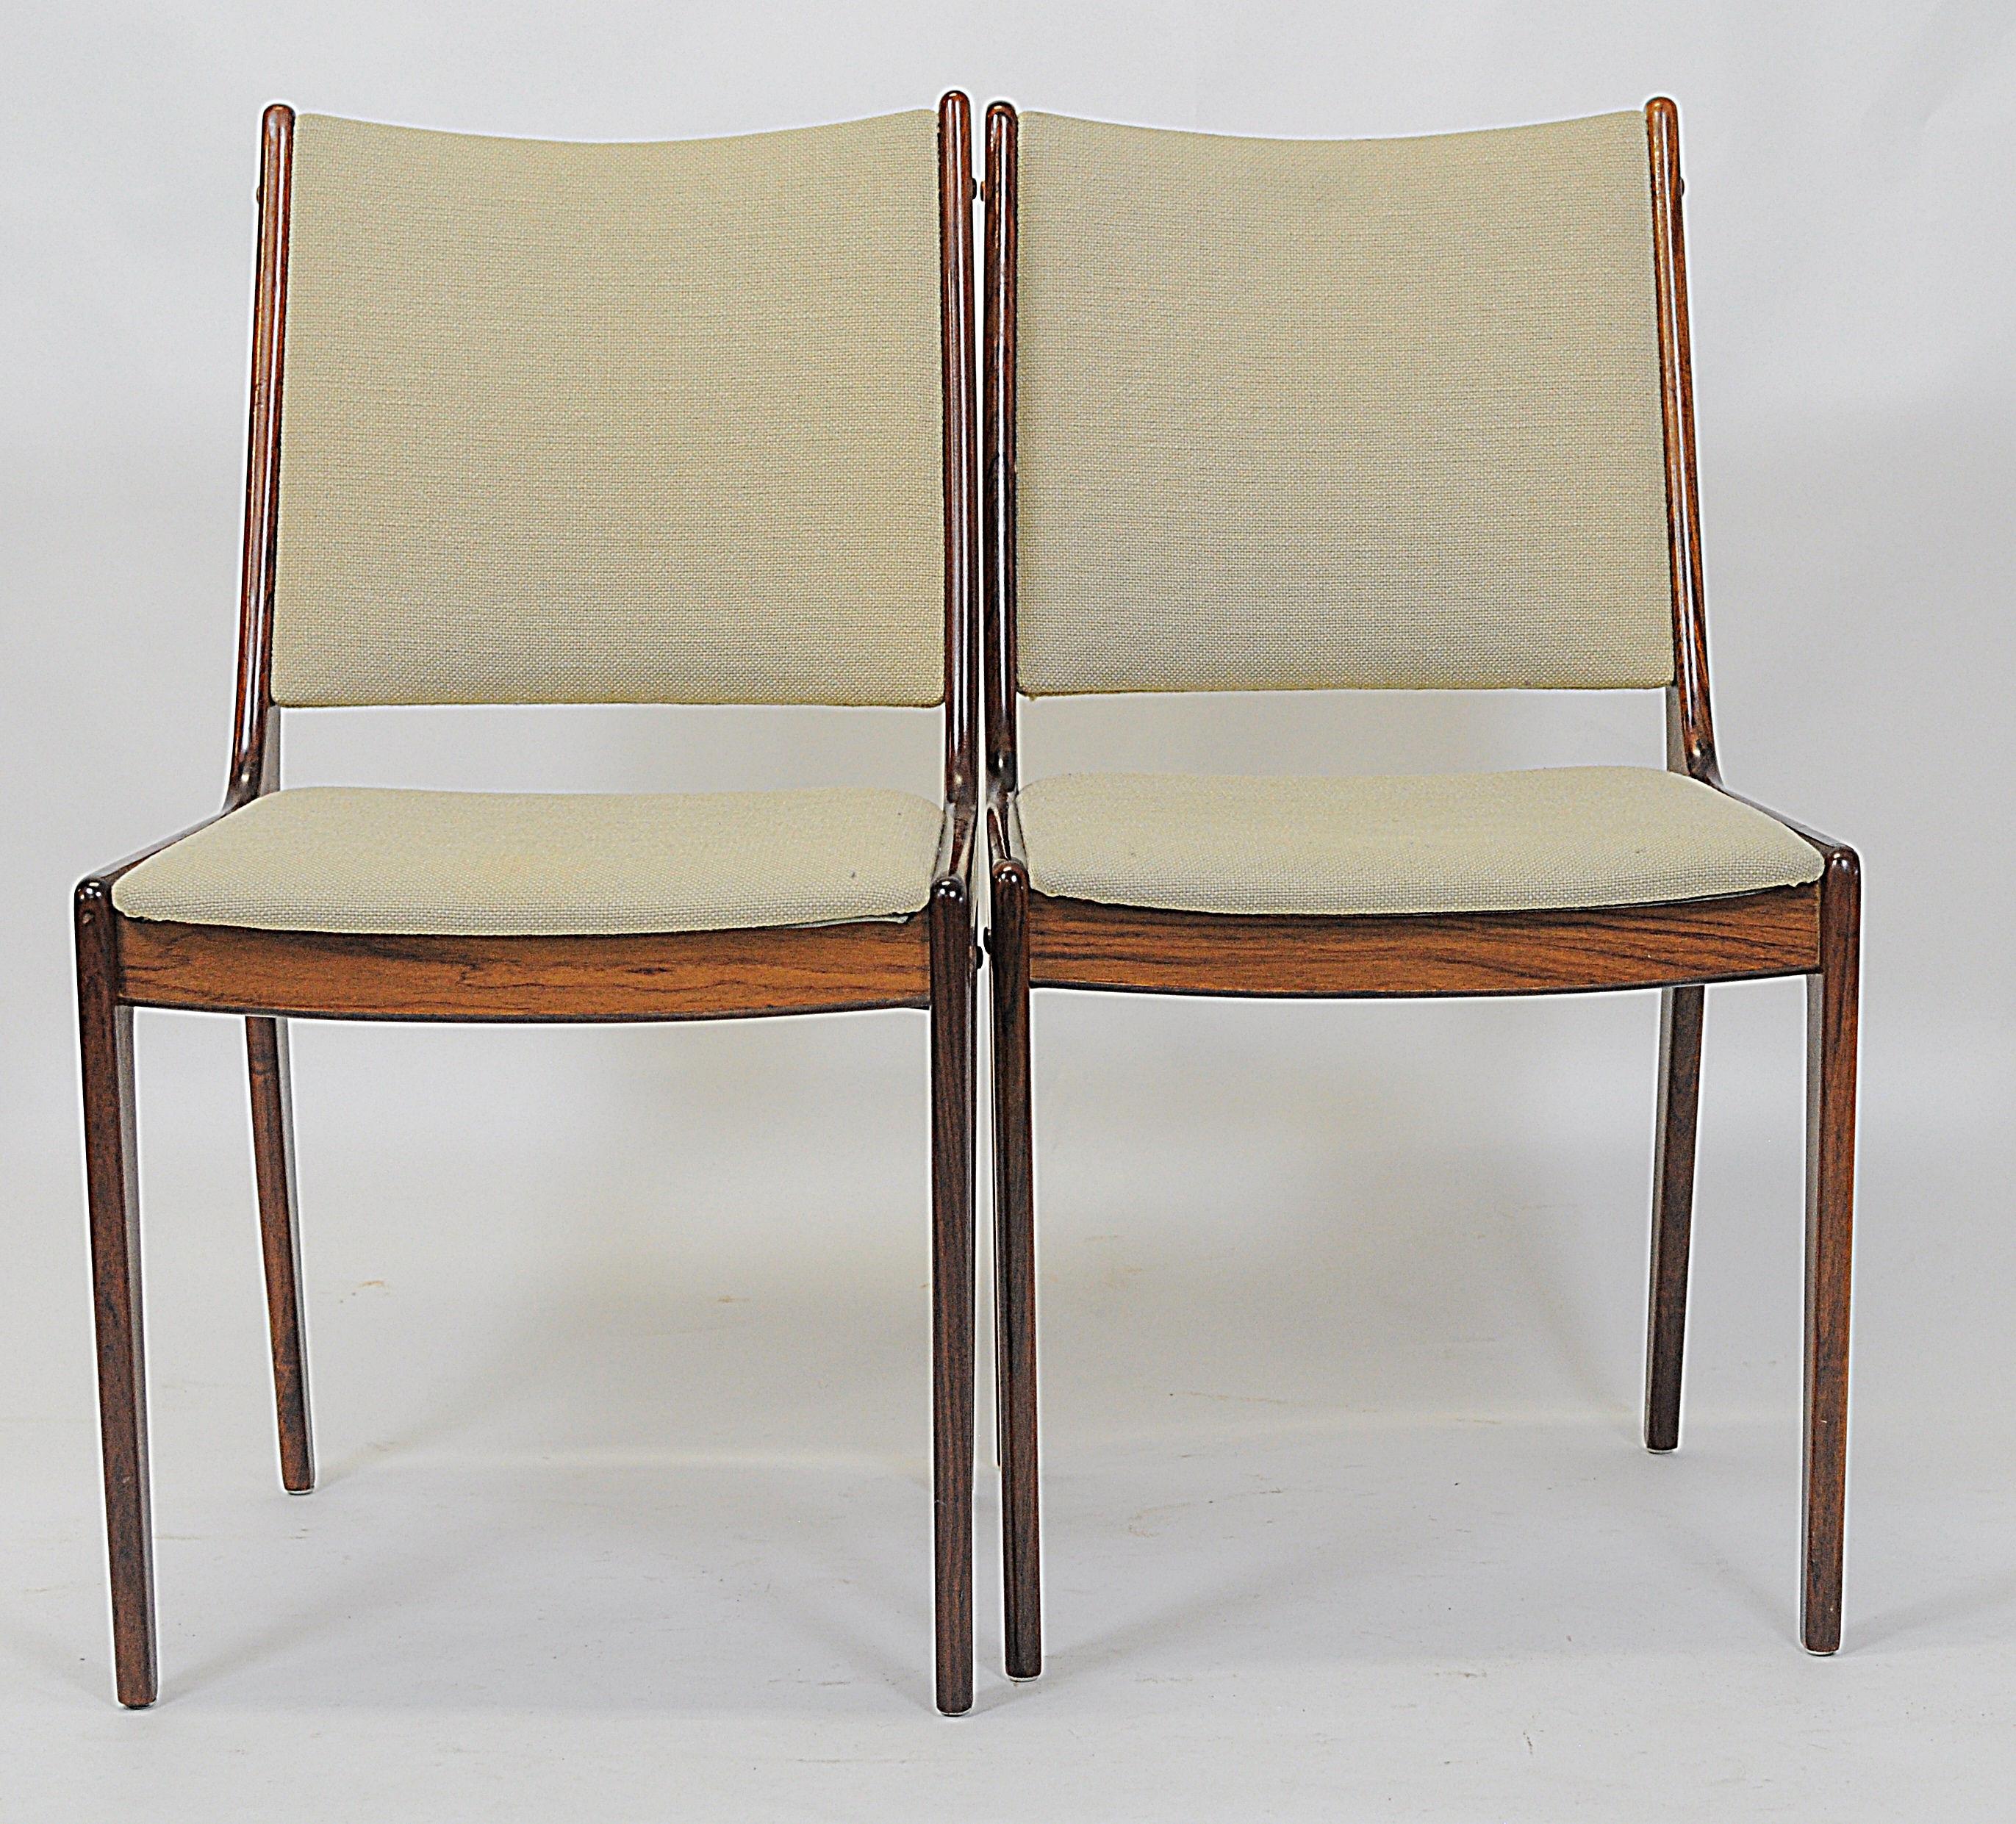 Ensemble de 8 chaises de salle à manger Johannes Andersen des années 1960 en bois de rose, fabriquées par Uldum Møbler, Danemark.

L'ensemble de chaises de salle à manger présente un design simple et élégant qui s'intégrera parfaitement dans la